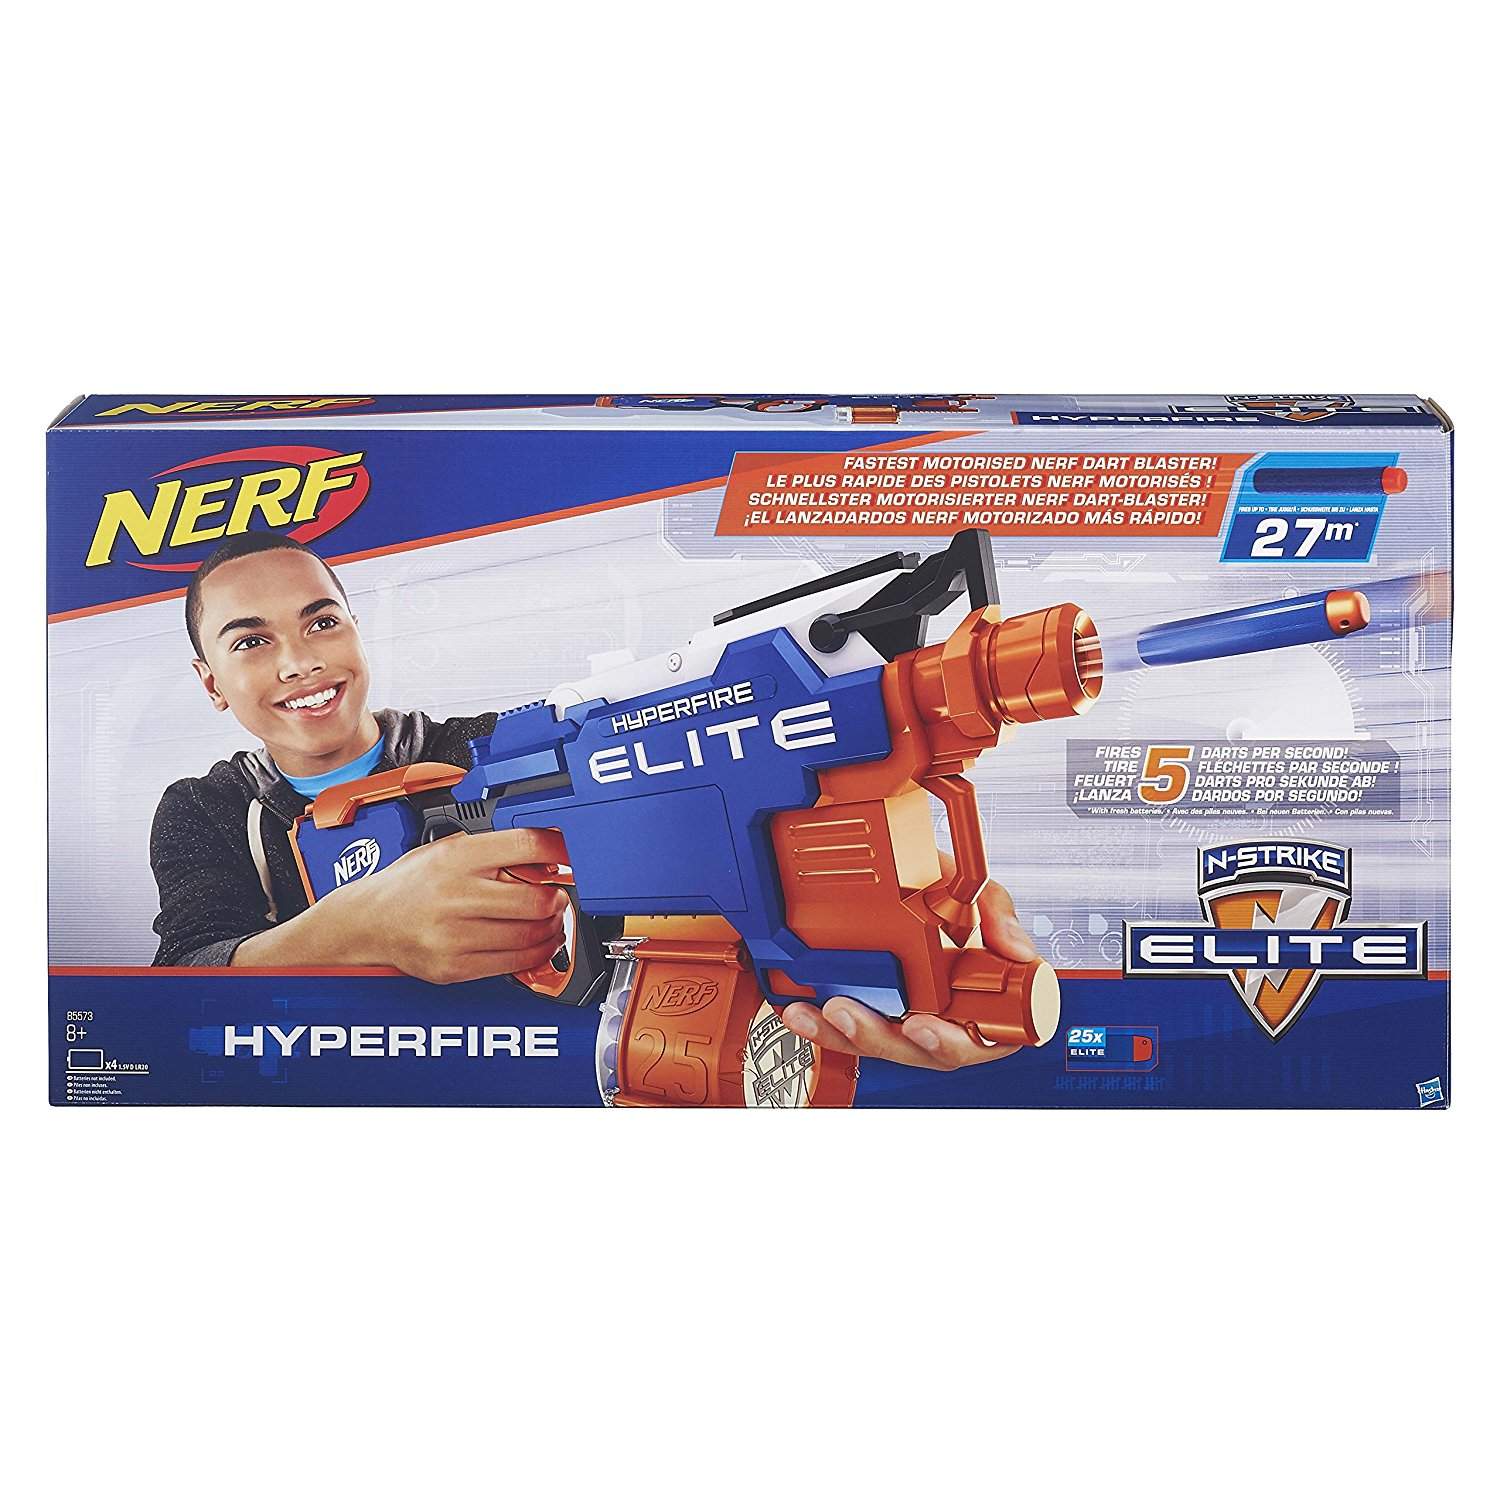 Best NERF Gun in the World Nerf N-Strike Elite HyperFire Blaster